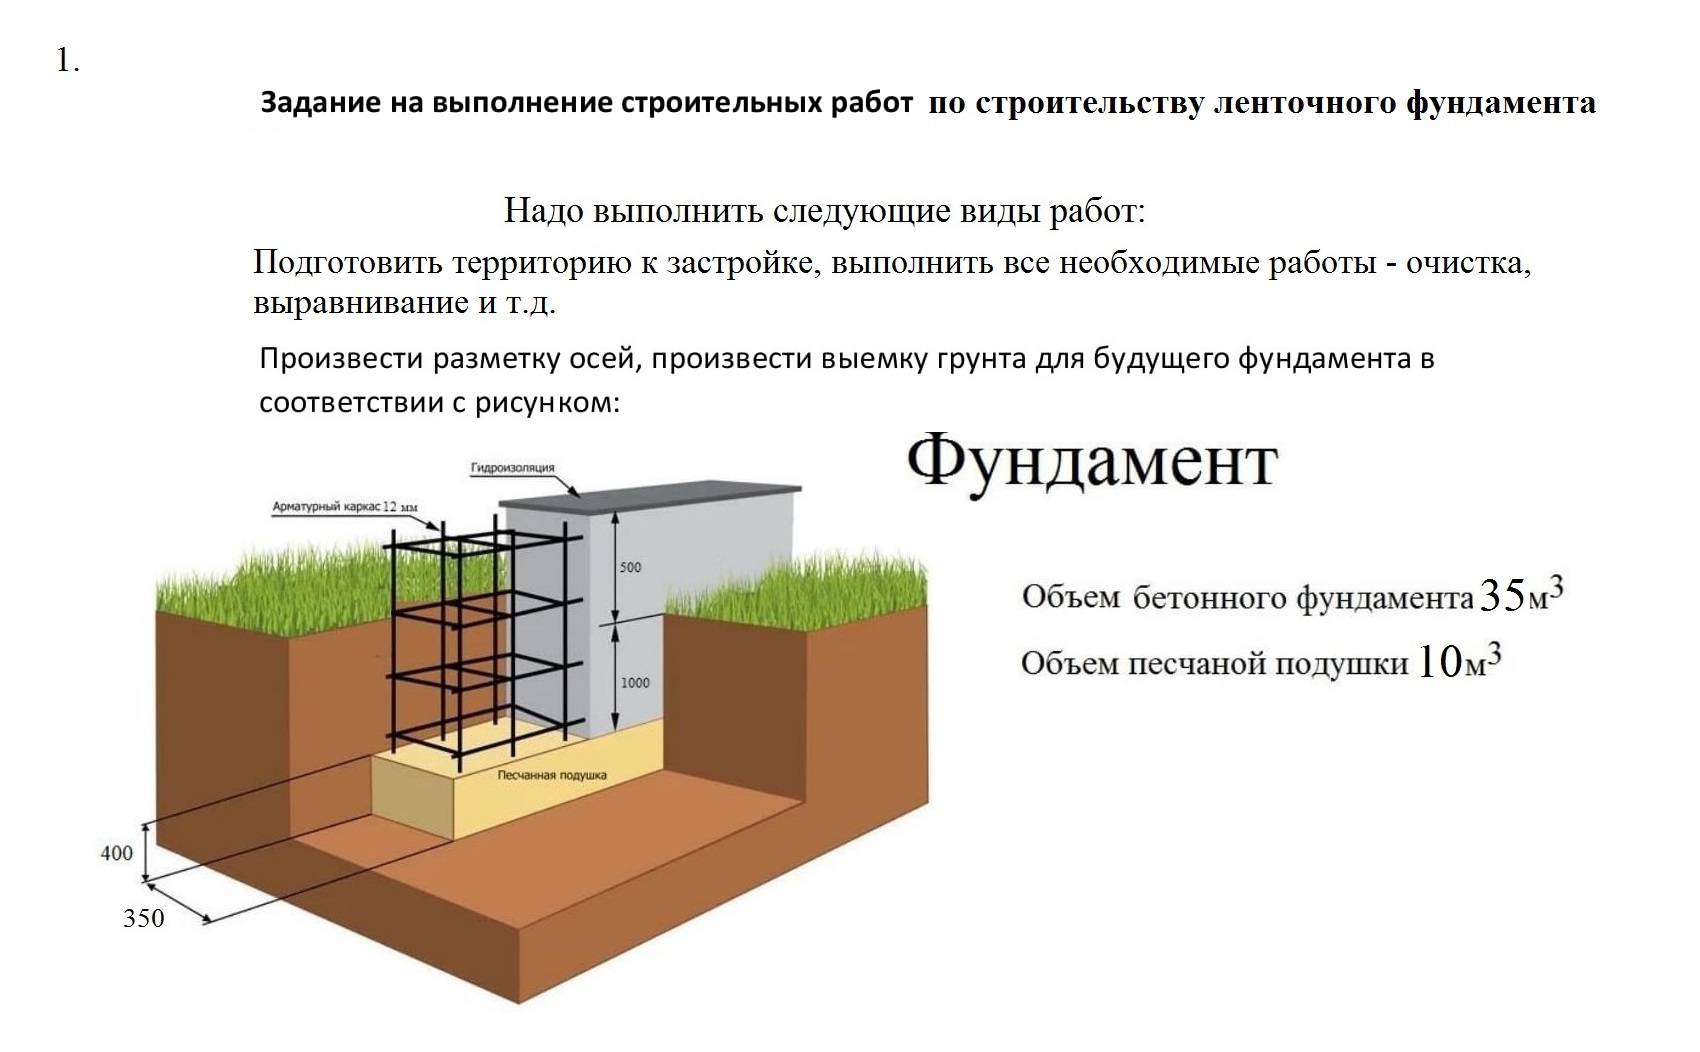 Ремонт ленточного фундамента все виды монтажа в московской области